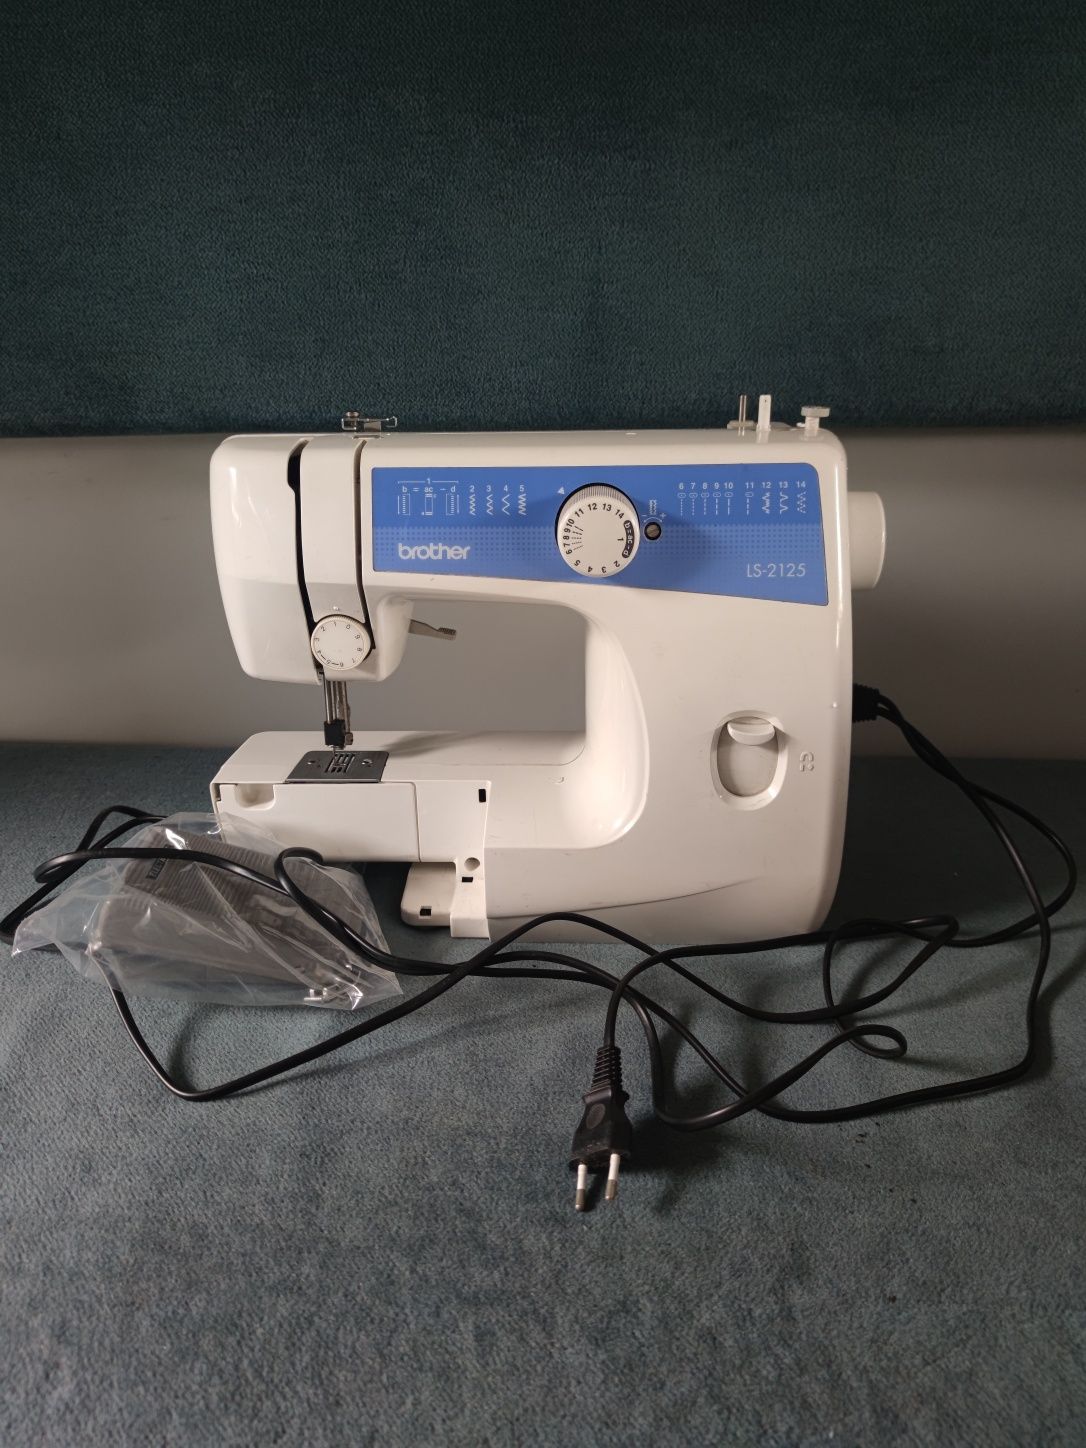 Швейная машинка Brother ls-2125